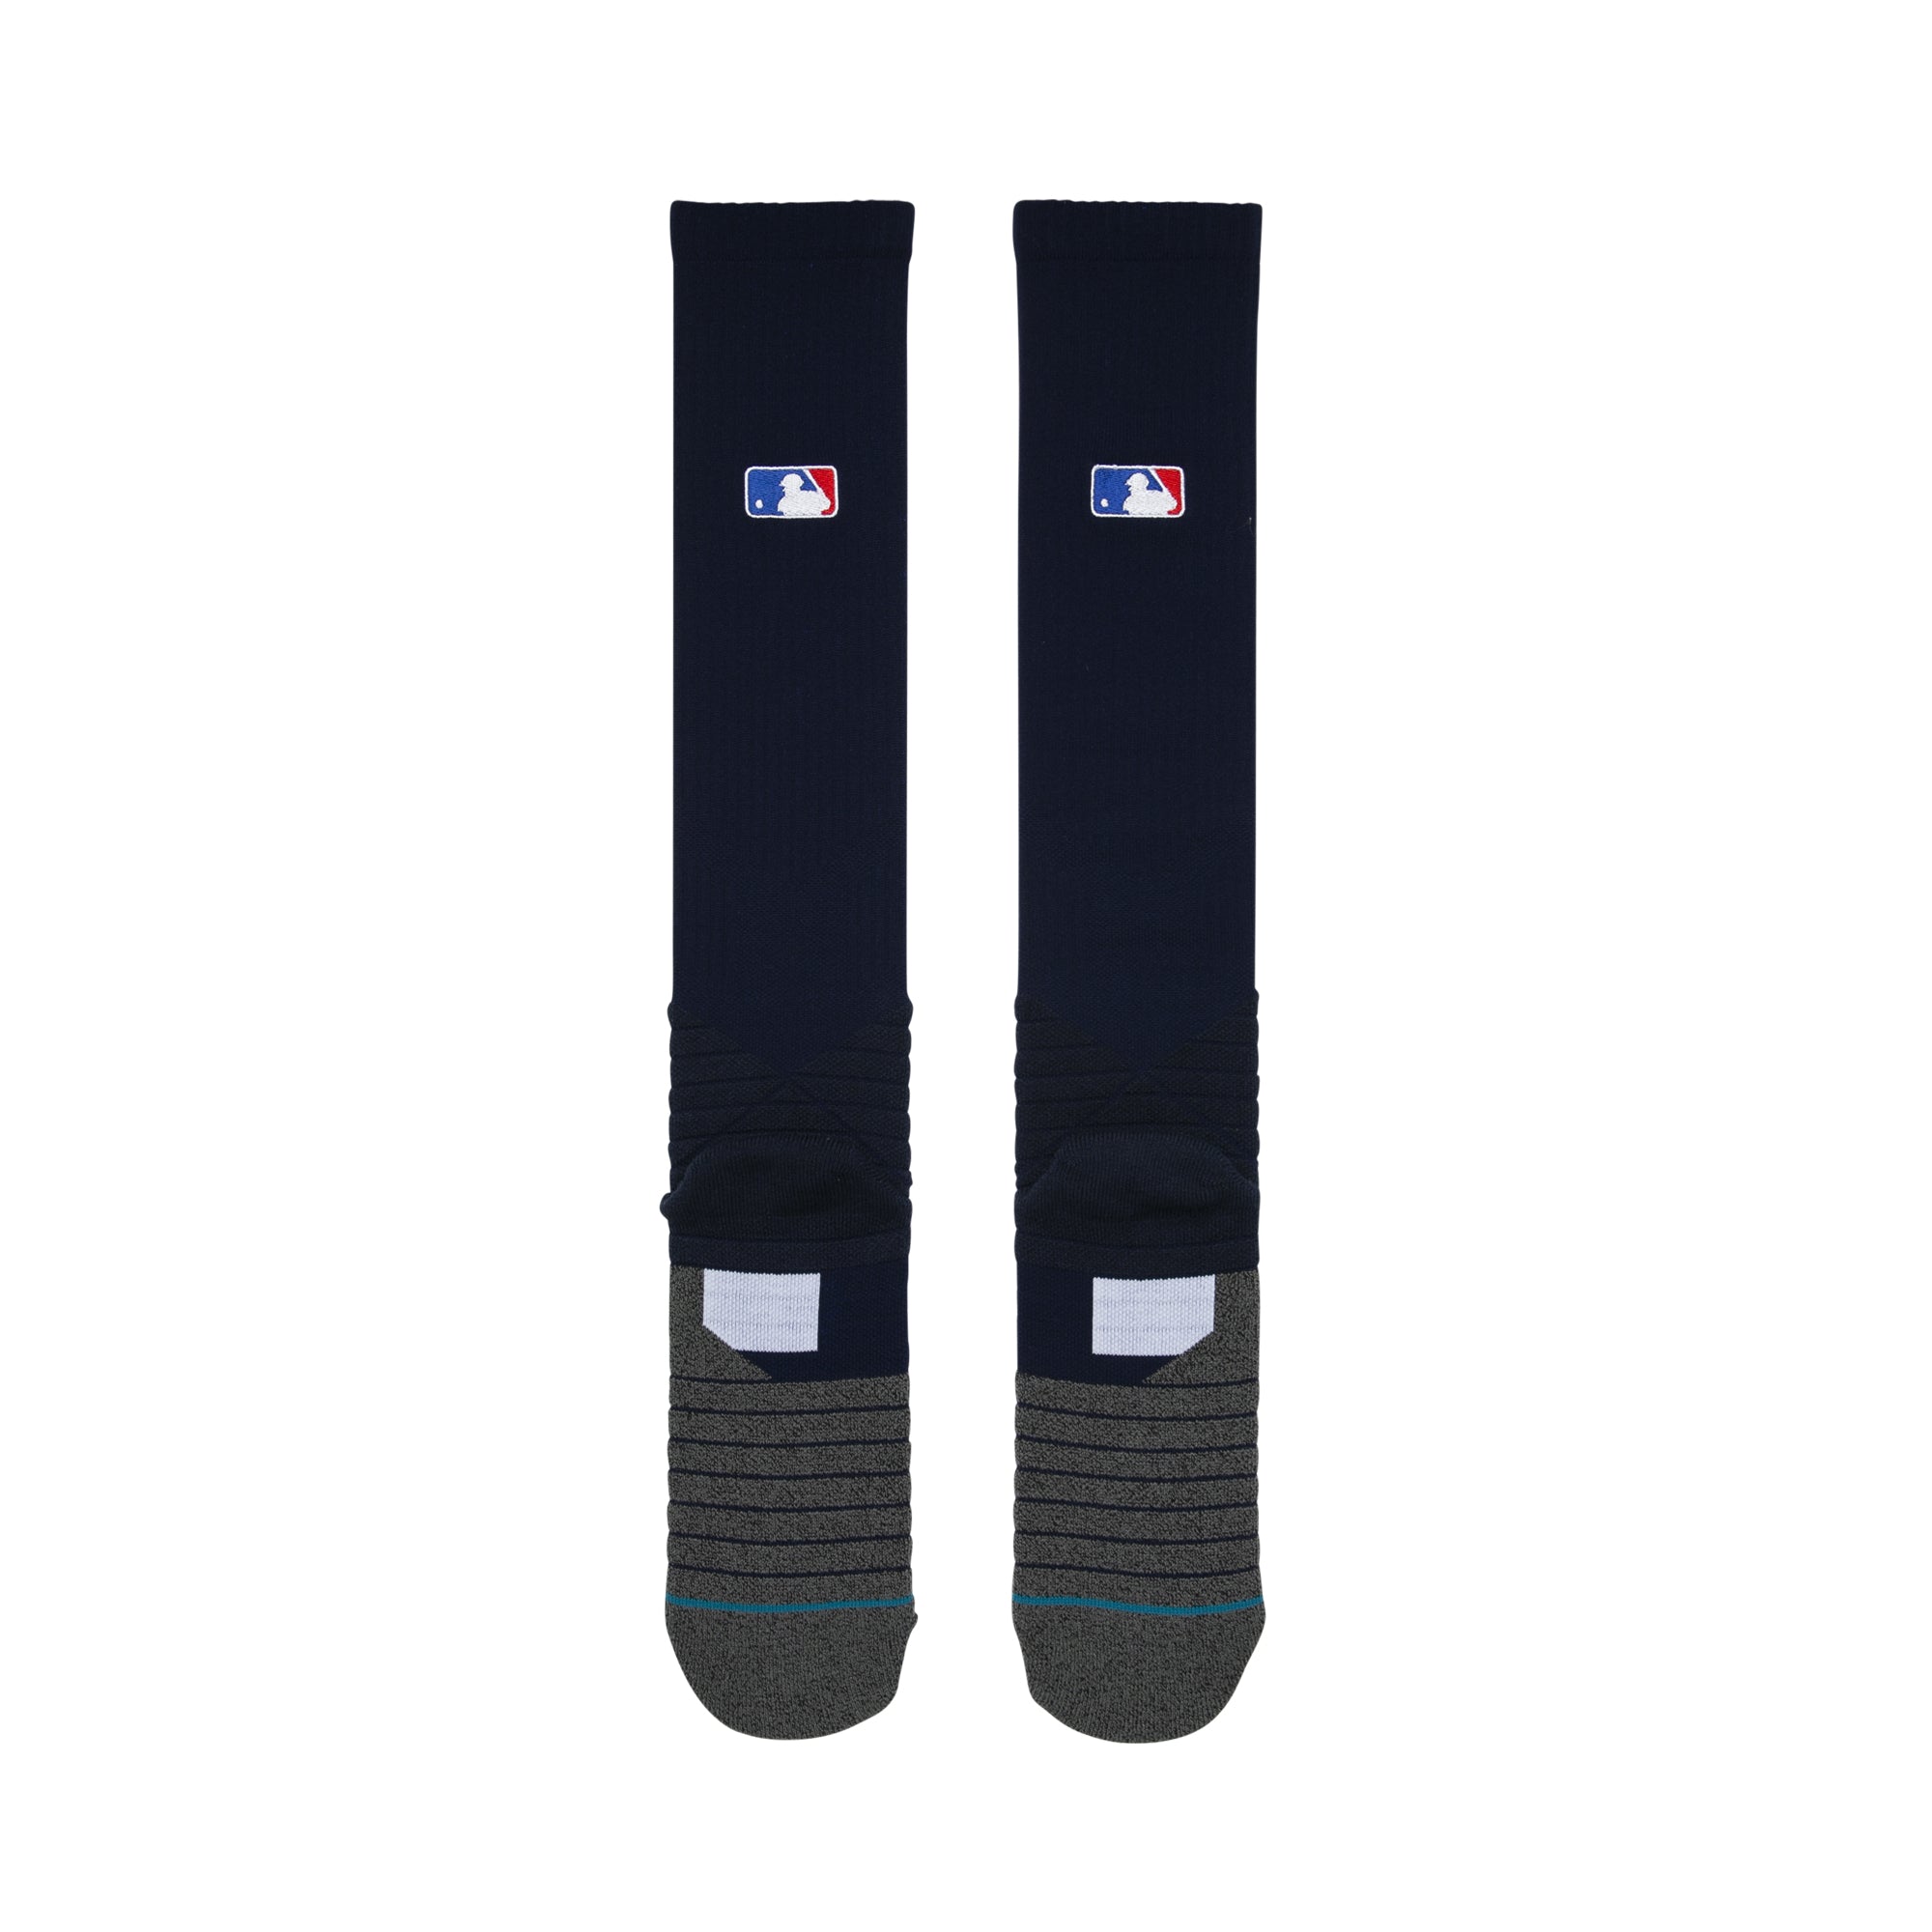 Stance MLB Diamond Pro OTC Socks Dark Navy Blue